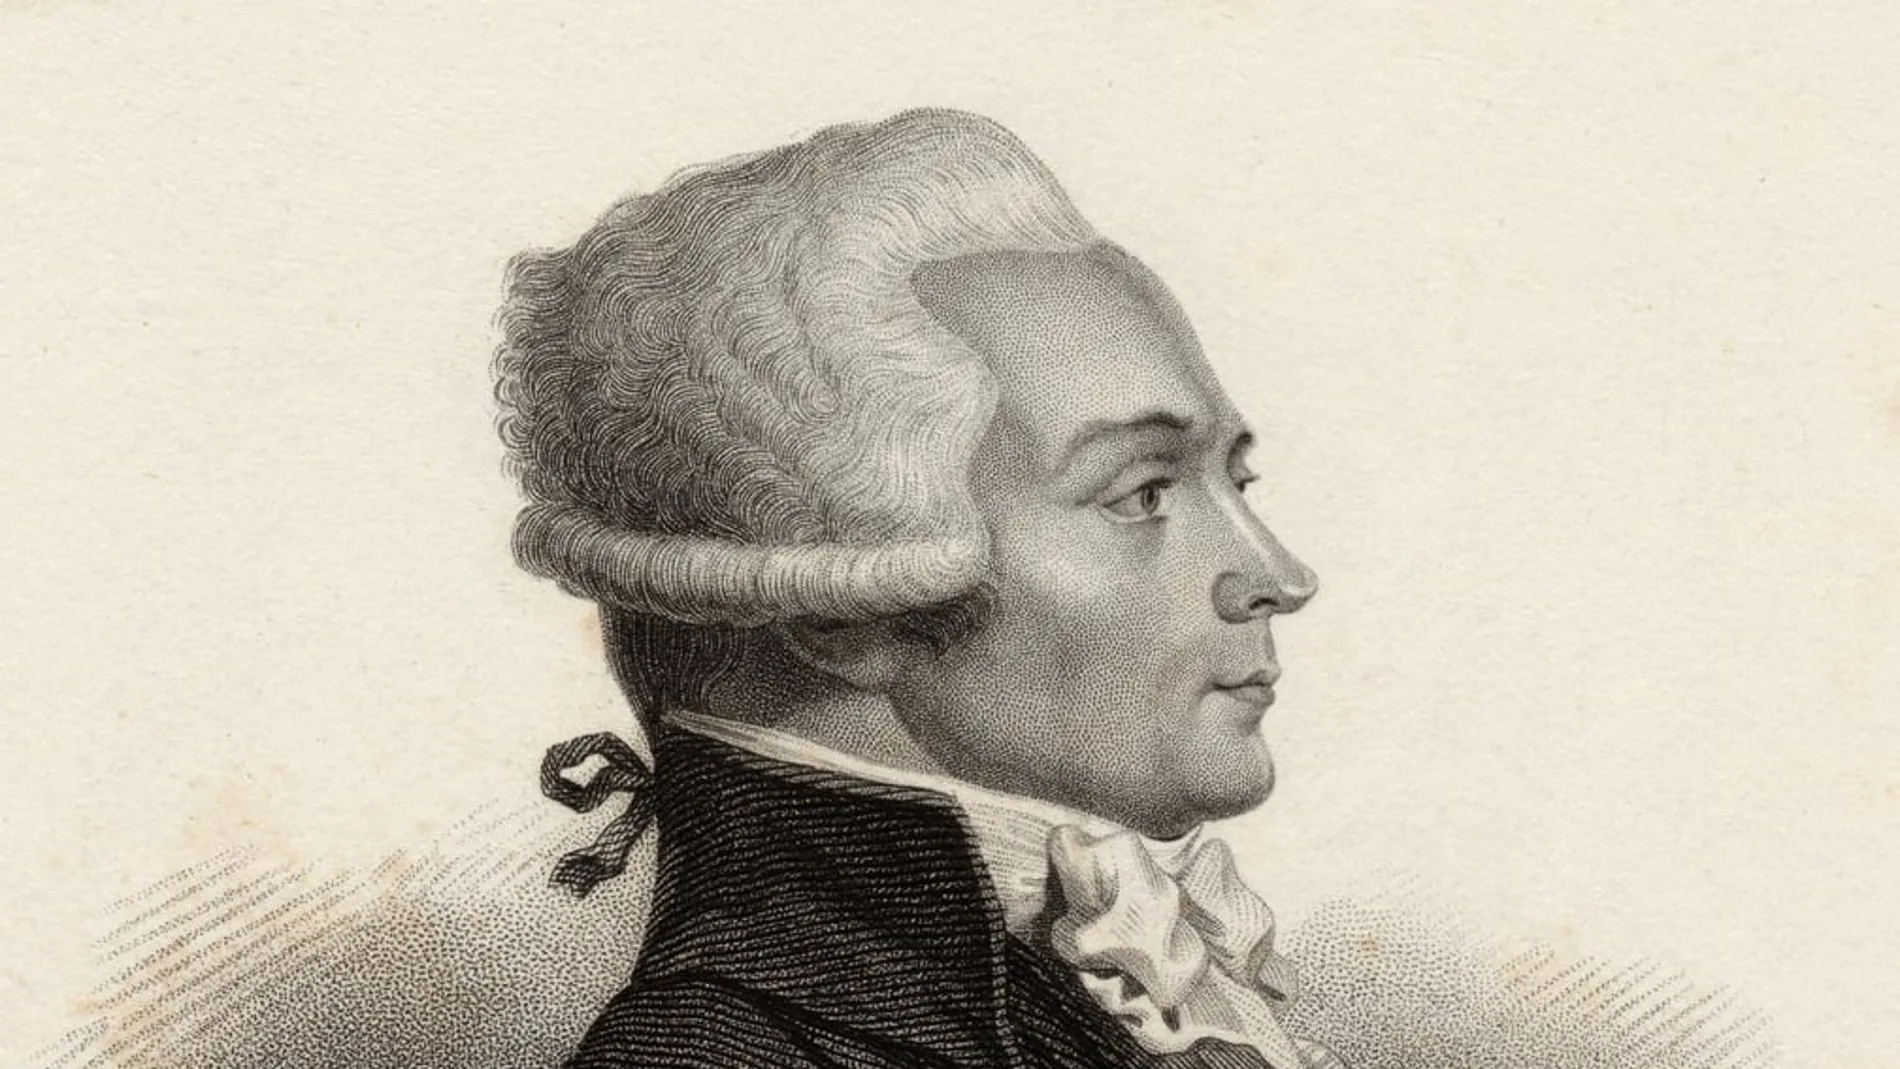 Grabado de Robespierre 